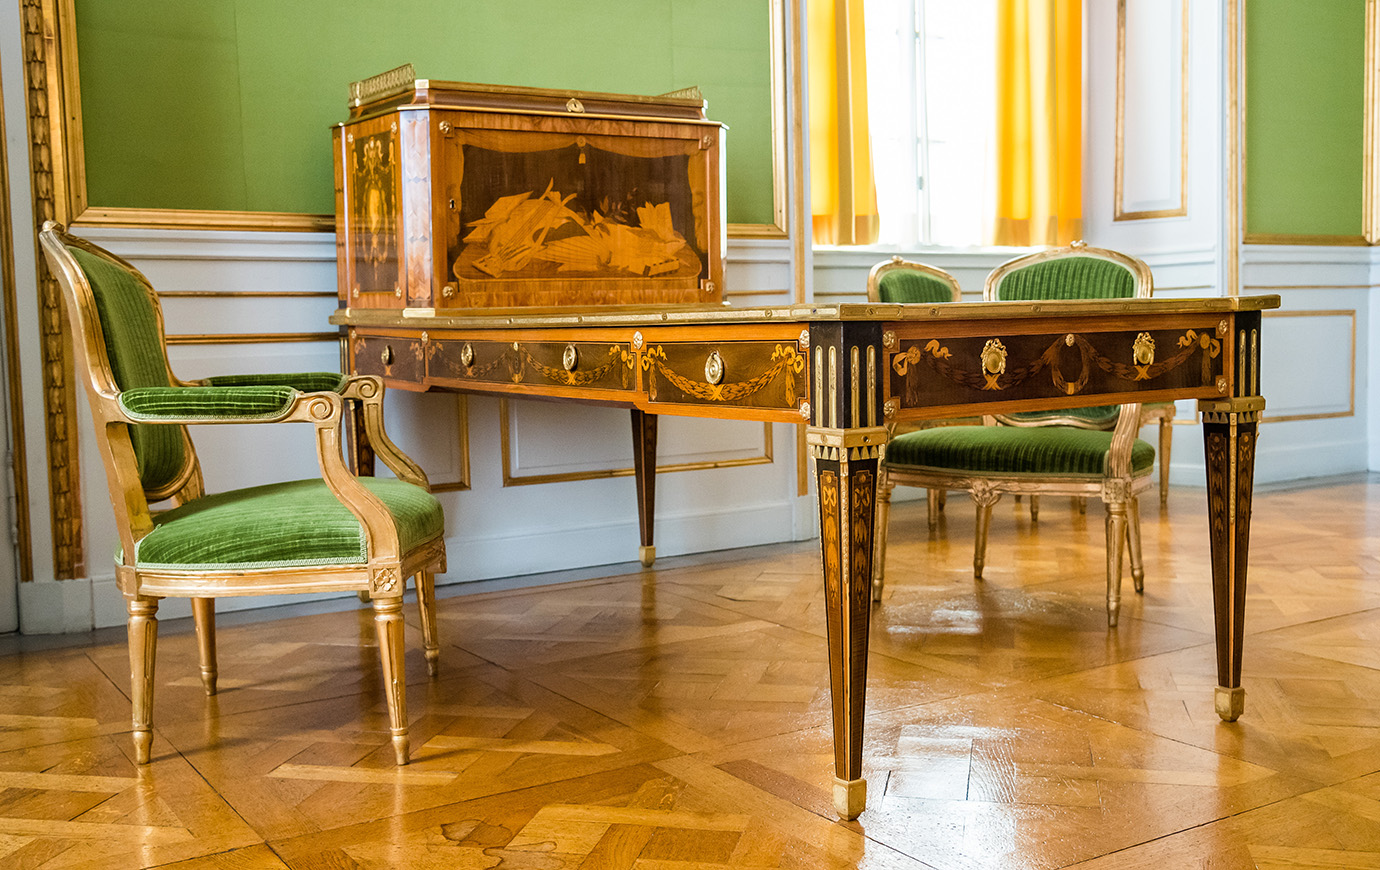 Lovisa Ulrikas skrivbord går i dag att beskåda på Drottningholms slott. 